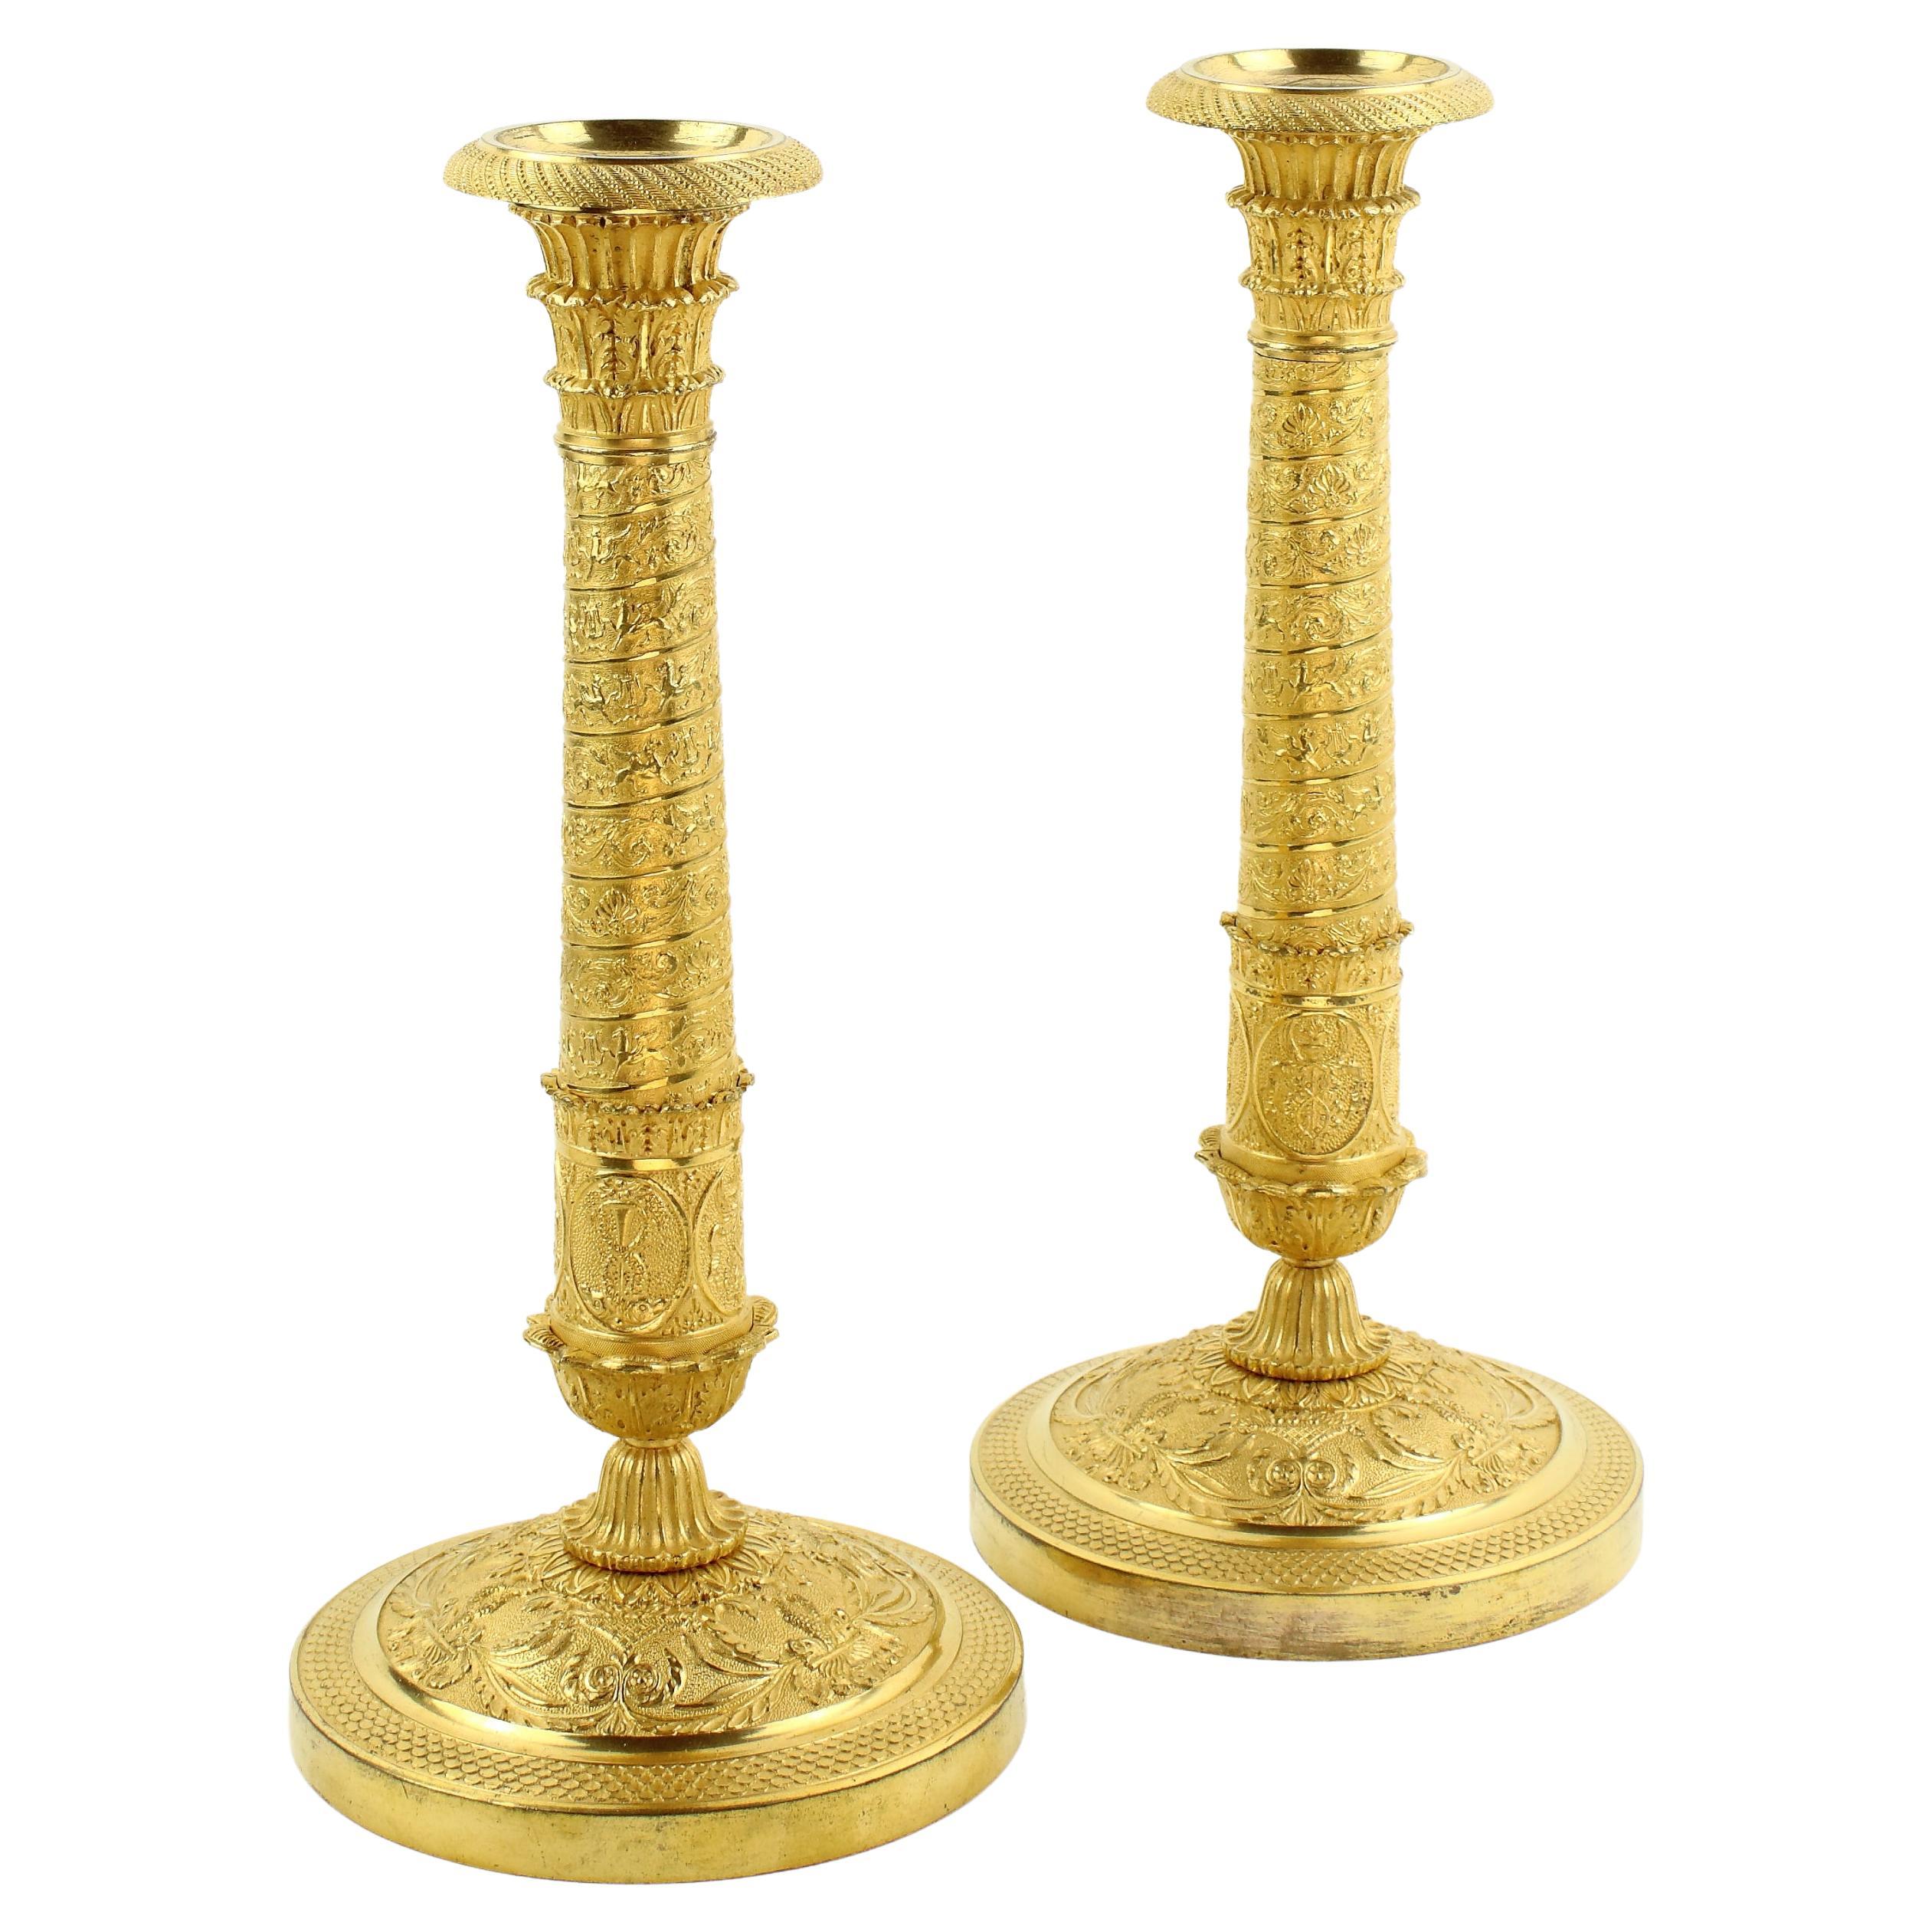 Paire de chandeliers Empire à colonne de Trajan en bronze doré du début du 19e siècle